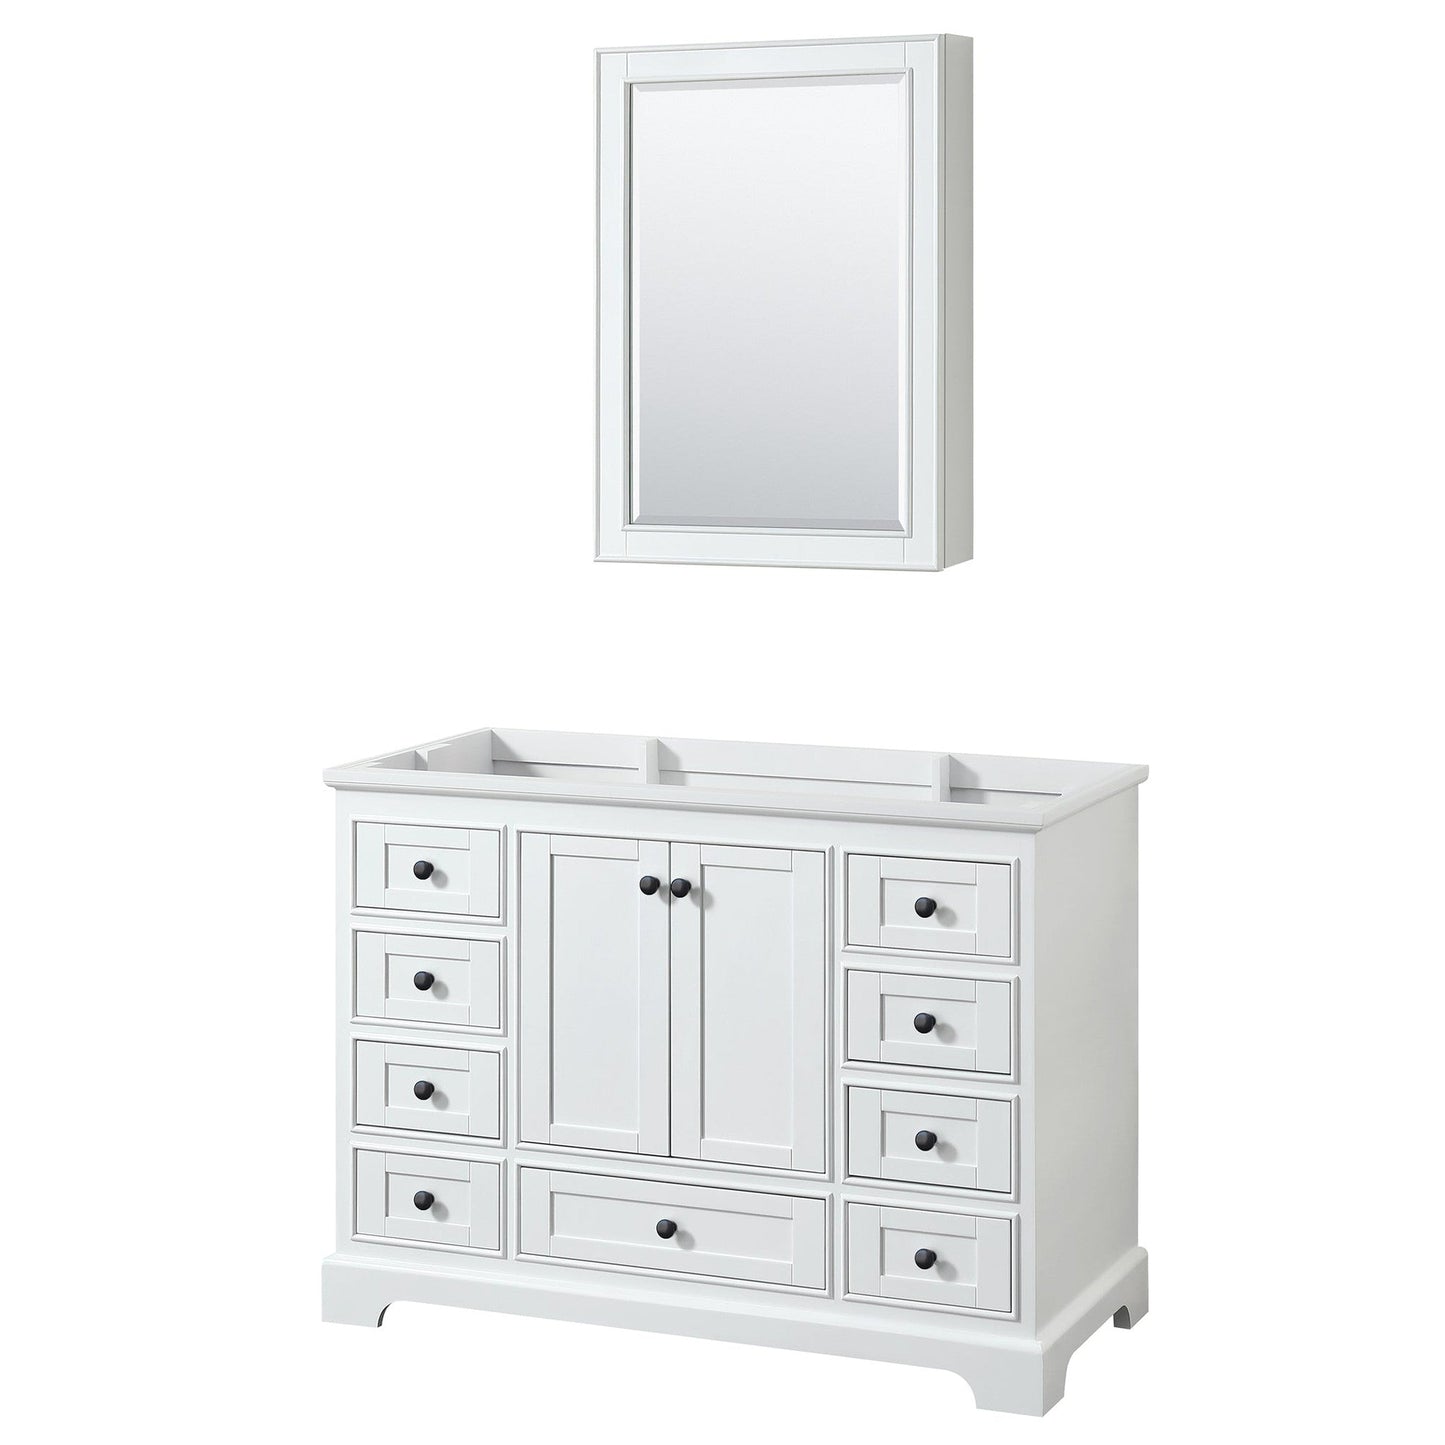 Deborah 48" Single Bathroom Vanity in White, No Countertop, No Sink, Matte Black Trim, Medicine Cabinet